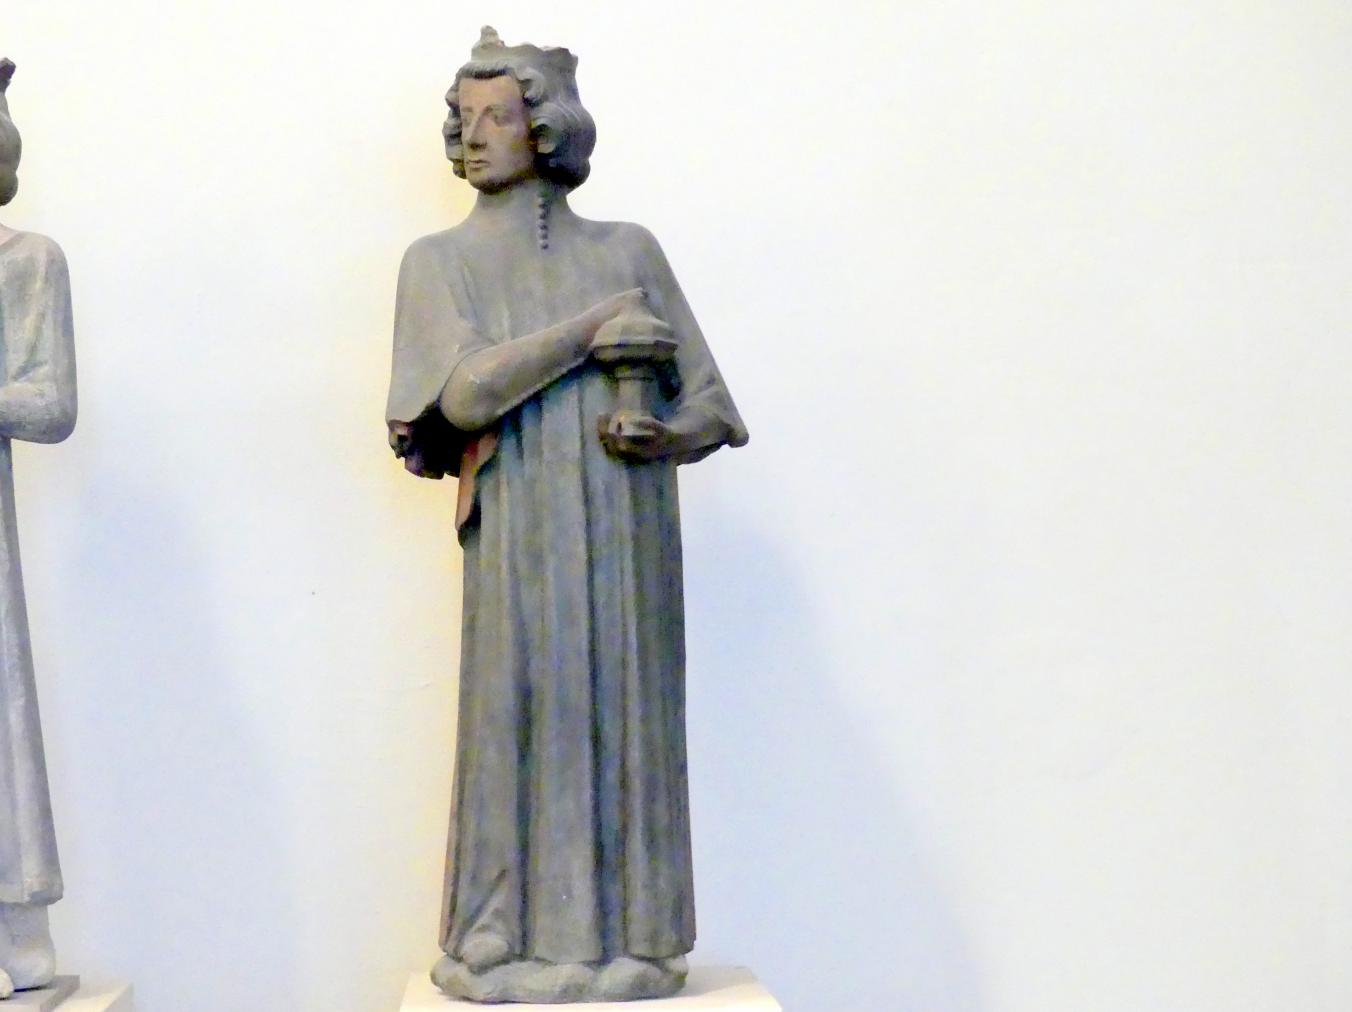 Zwei Könige, München, Münchner Kaiserburg im Alten Hof, jetzt München, Bayerisches Nationalmuseum, Saal 2, 1324, Bild 4/6